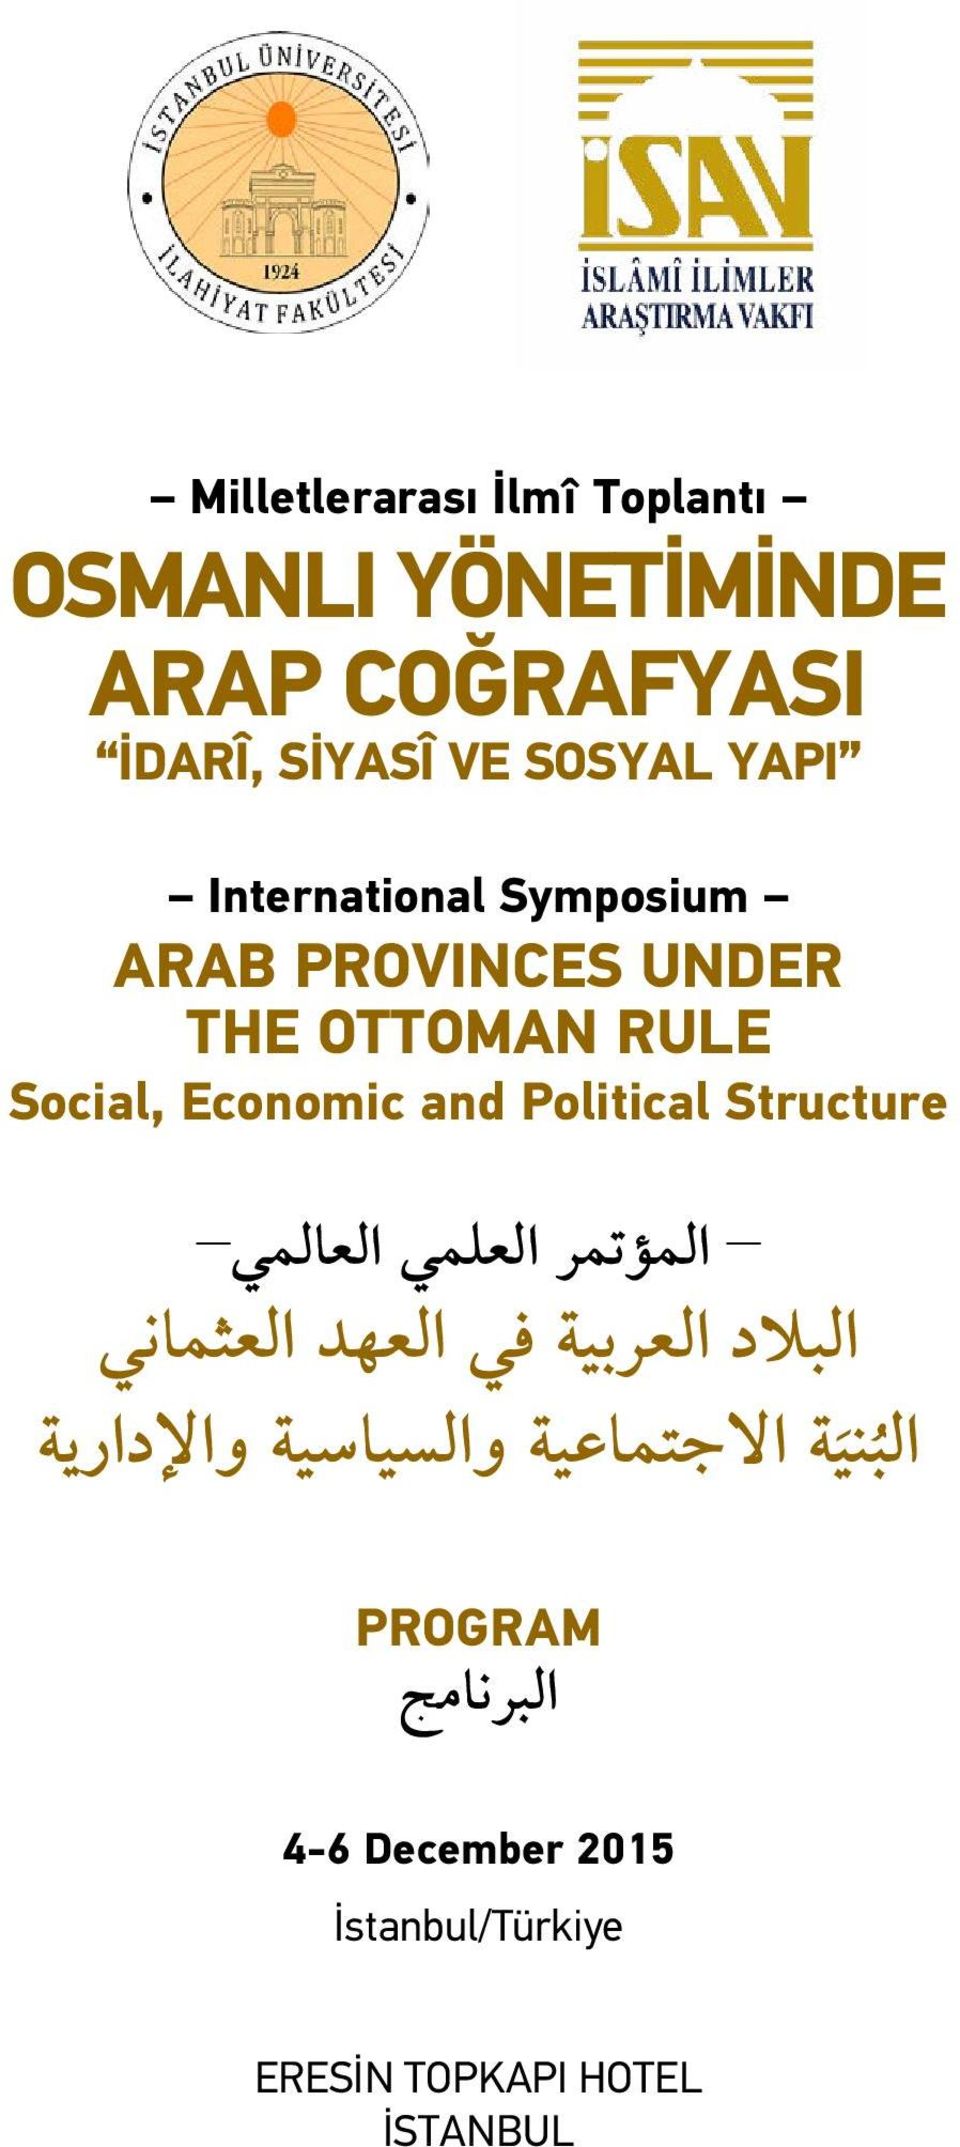 Structure المؤتمر العلمي العالمي البالد العربية في العهد العثماني ة الب ني االجتماعية